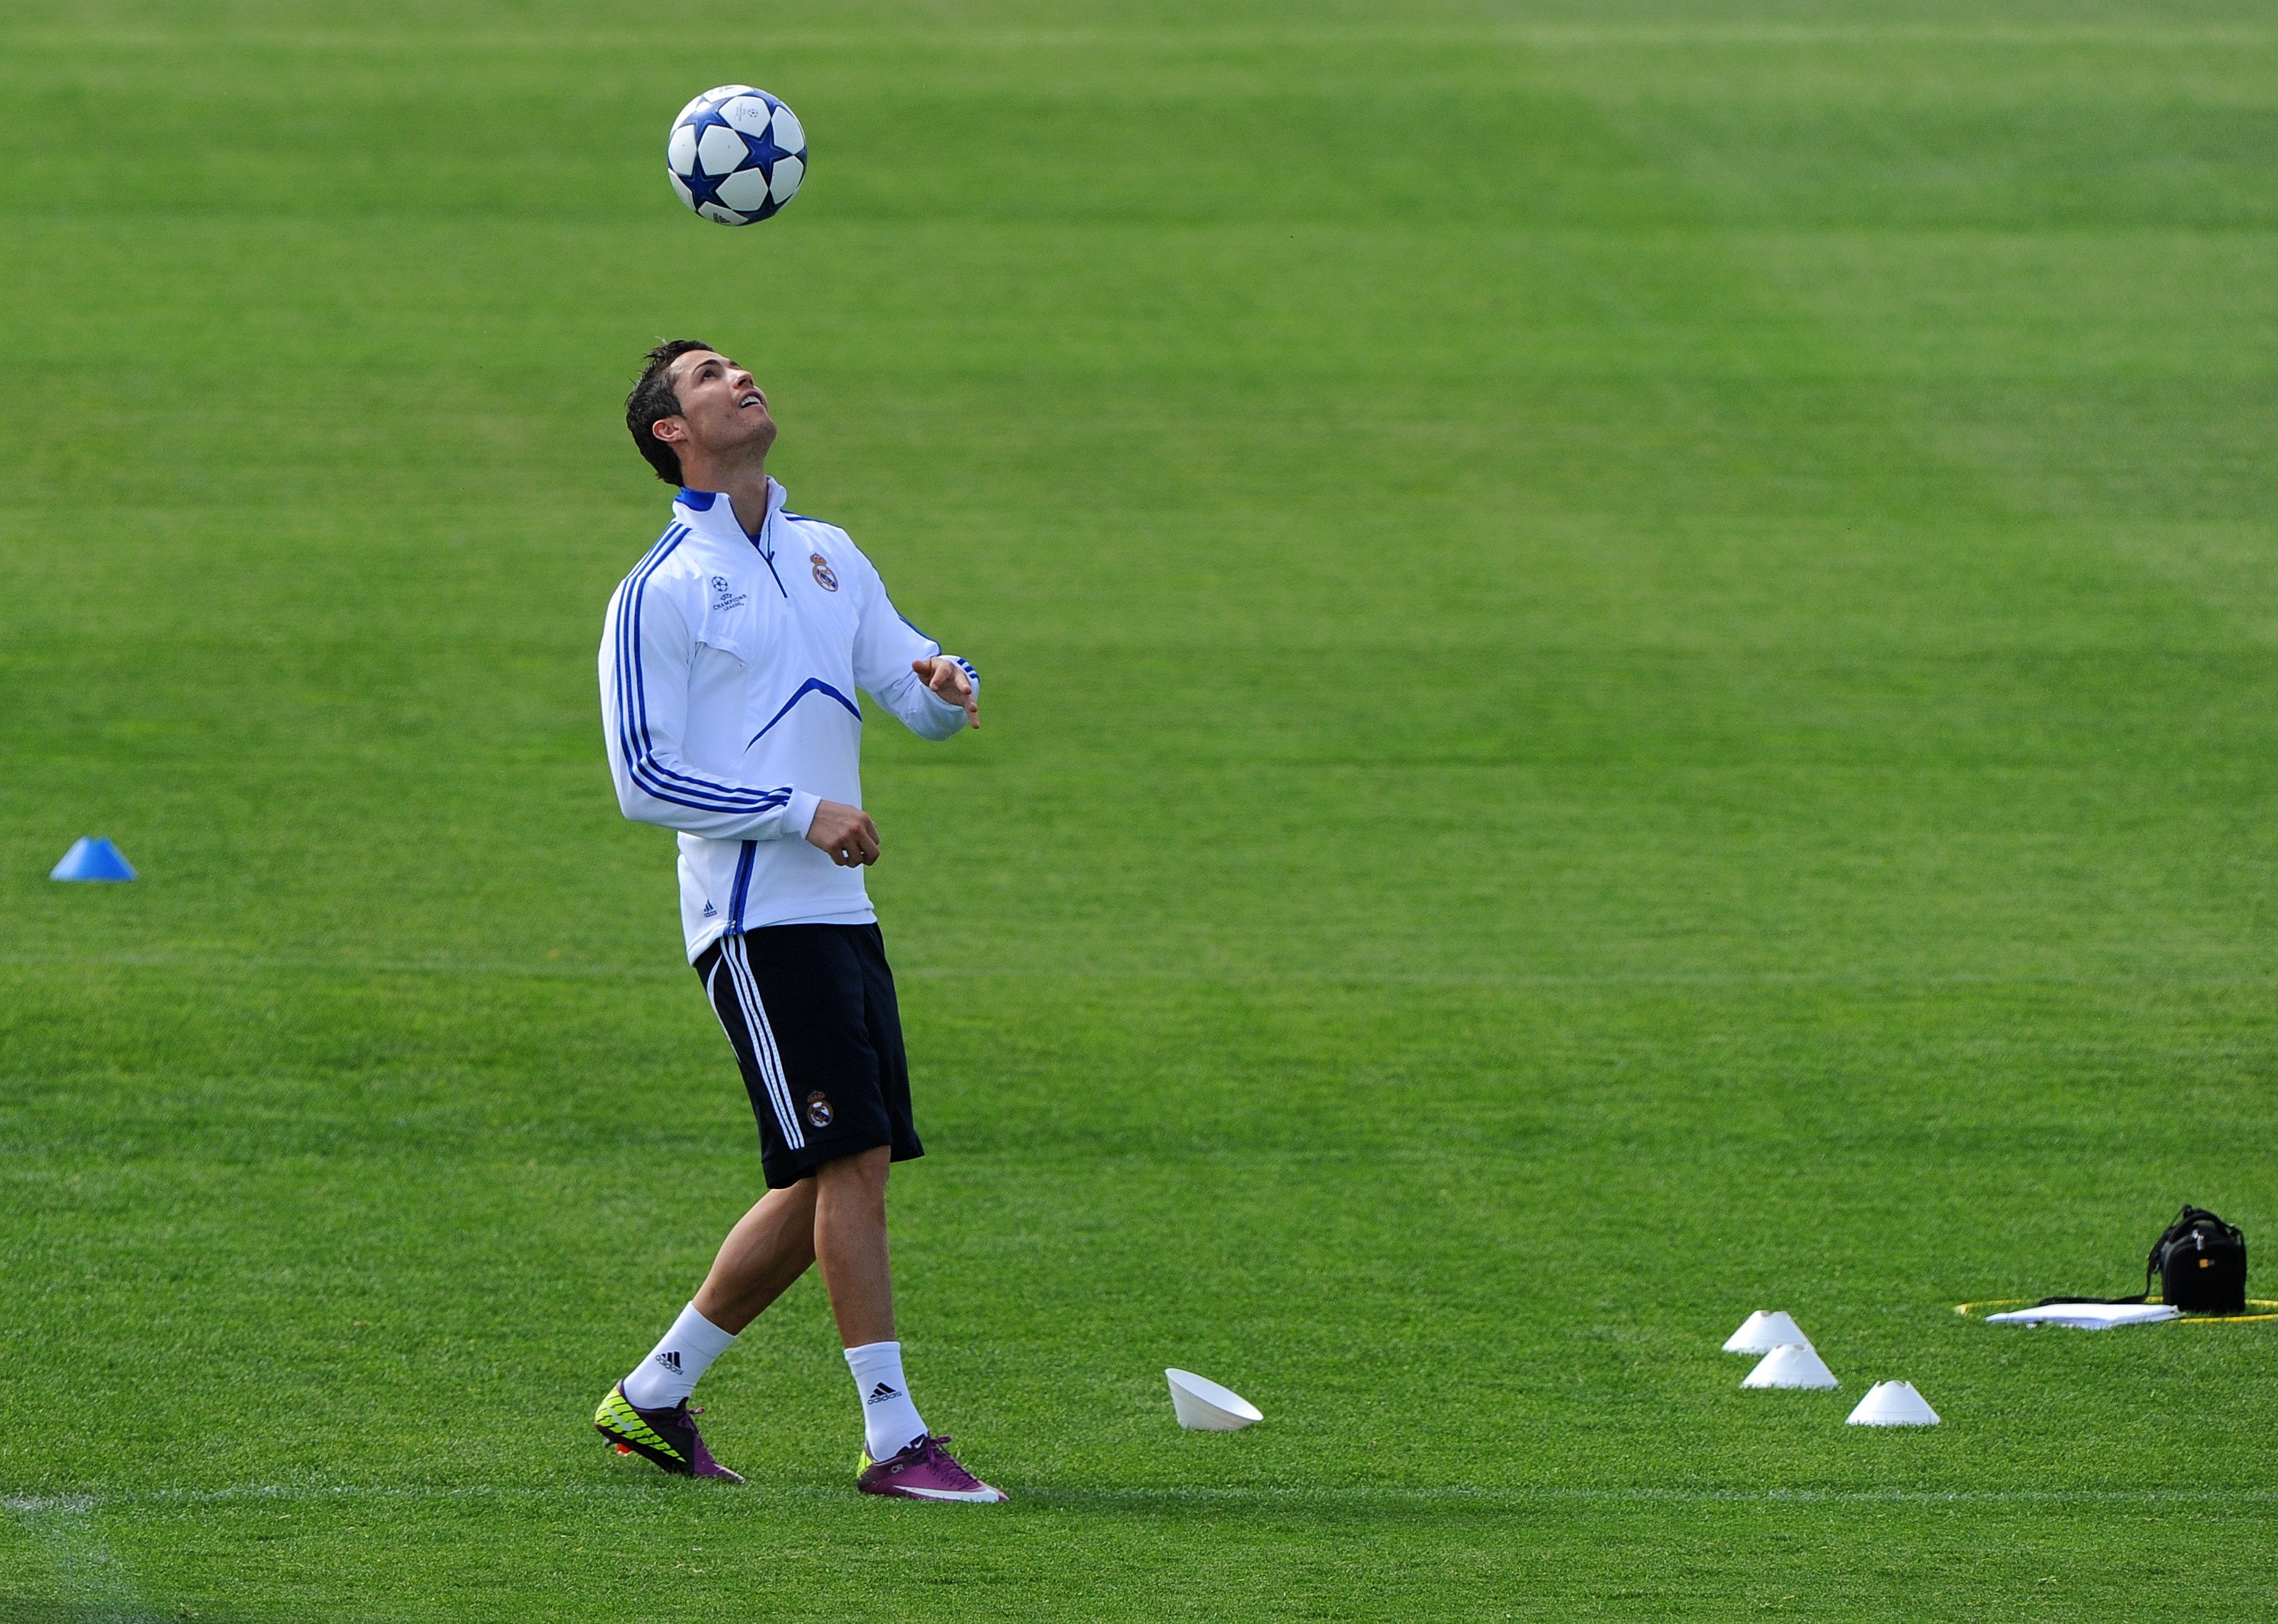 Футболист укротивший мяч. Криштиану Роналду футболисты. Криштиану Роналду на поле. Cristiano Ronaldo чеканит мяч. Криштиану Роналду на поле с мячом.